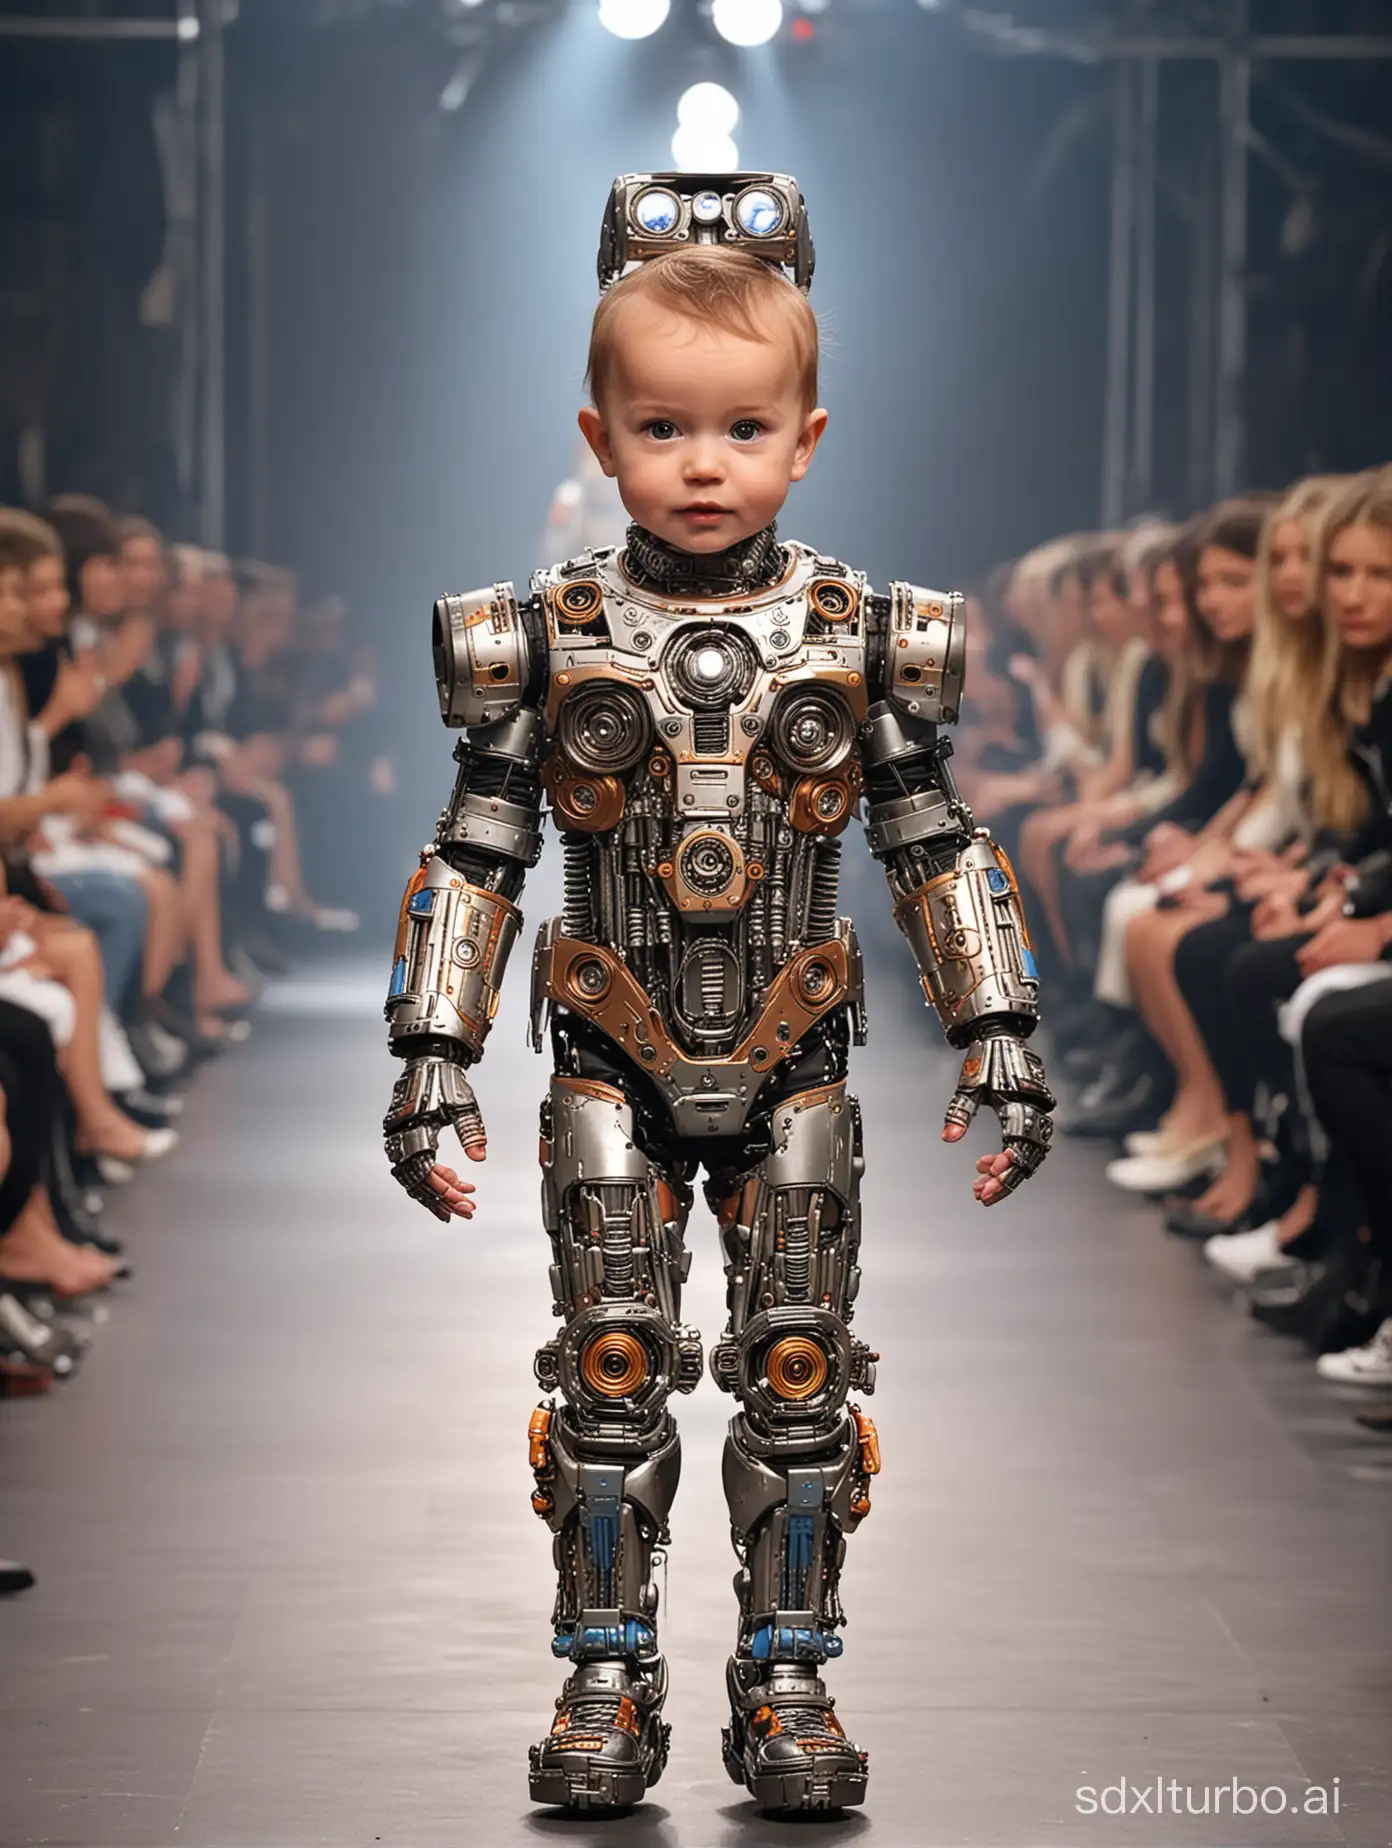 パリコレクションでロボットを🤖モデルにした赤ちゃんモデルがランウェイを歩く、赤ちゃん👶トップモデル、歩く、(全身像)、(両脇に観客)、パリコレのランウェイ、パリコレクションのランウェイ、(奇抜なファッション)、常軌を逸するファッション、派手なファッション、パリコレクション

